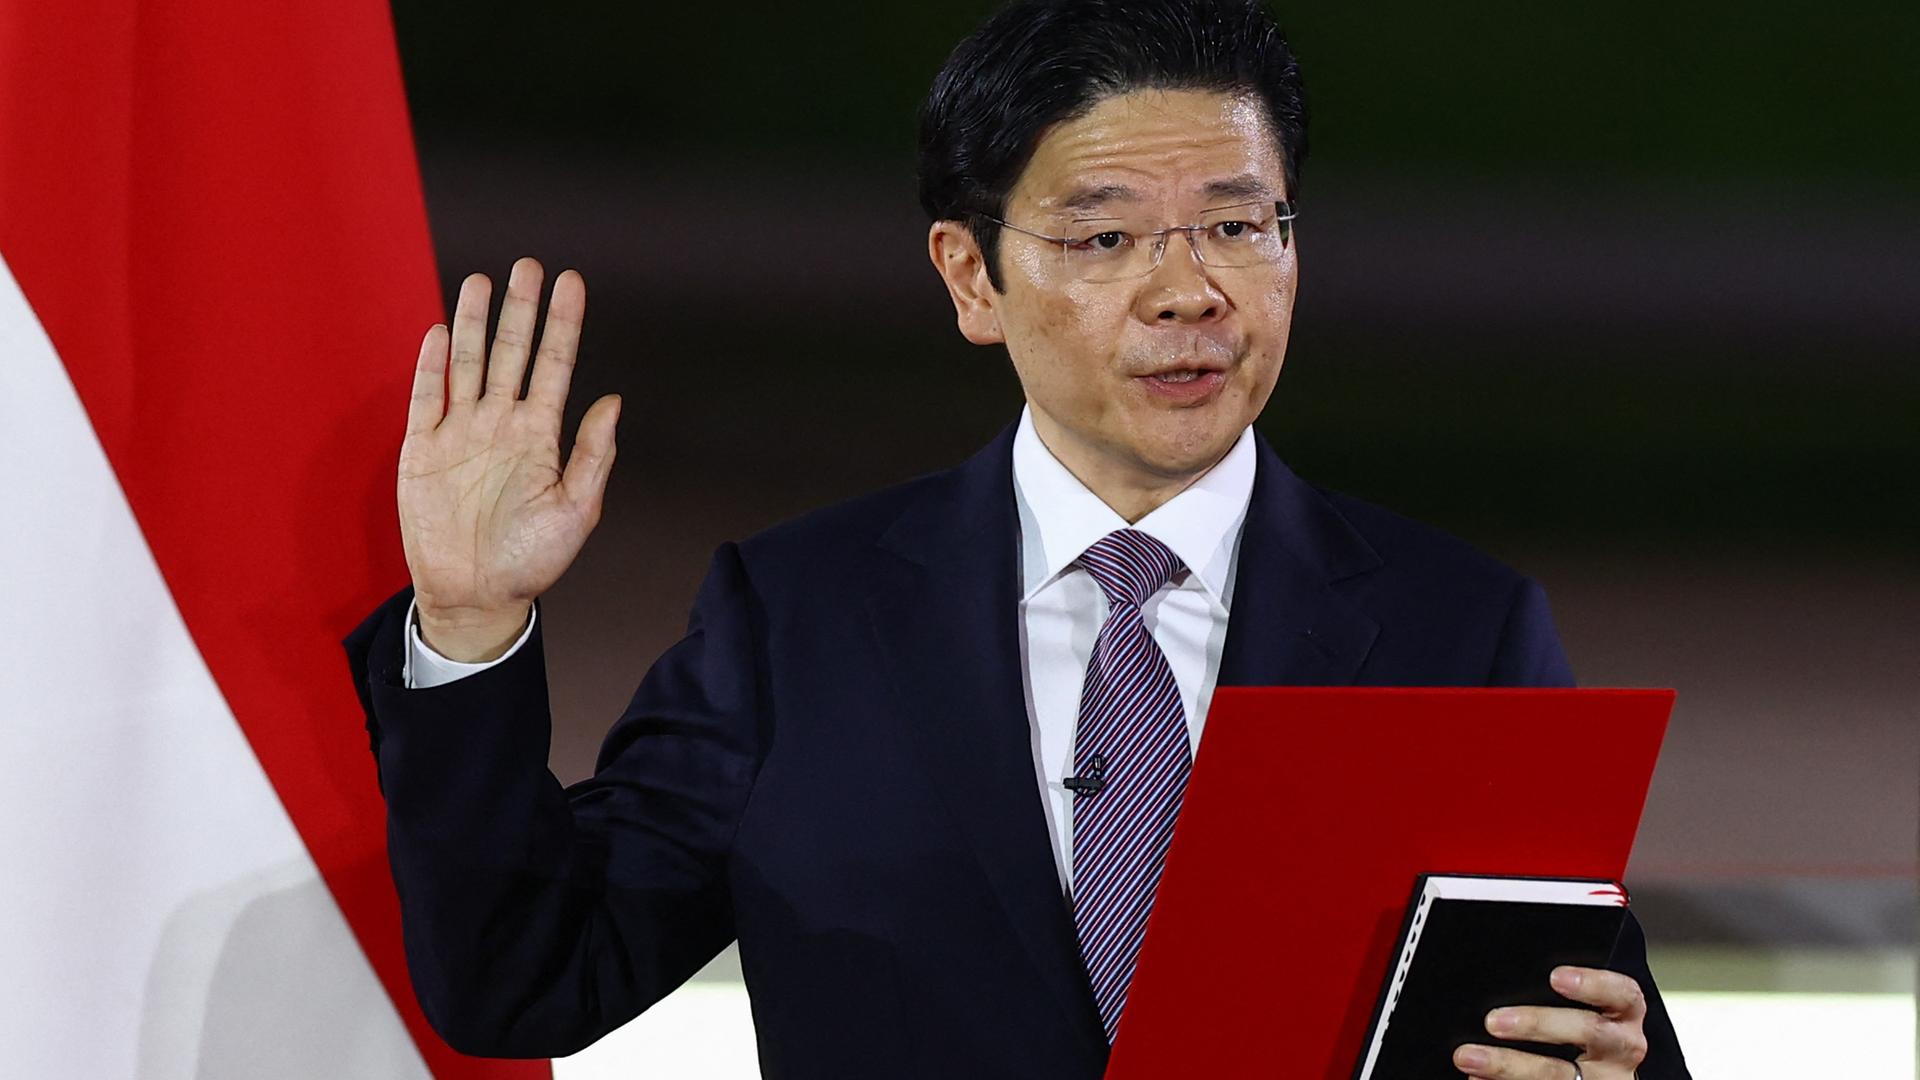 Wong im schwarzen Jackett und mit Krawatte hebt die rechte Hand und hält ein Buch - vermutlich die Bibel - sowie ein rotes Blatt in der Hand. Daneben die Flagge Singapurs.